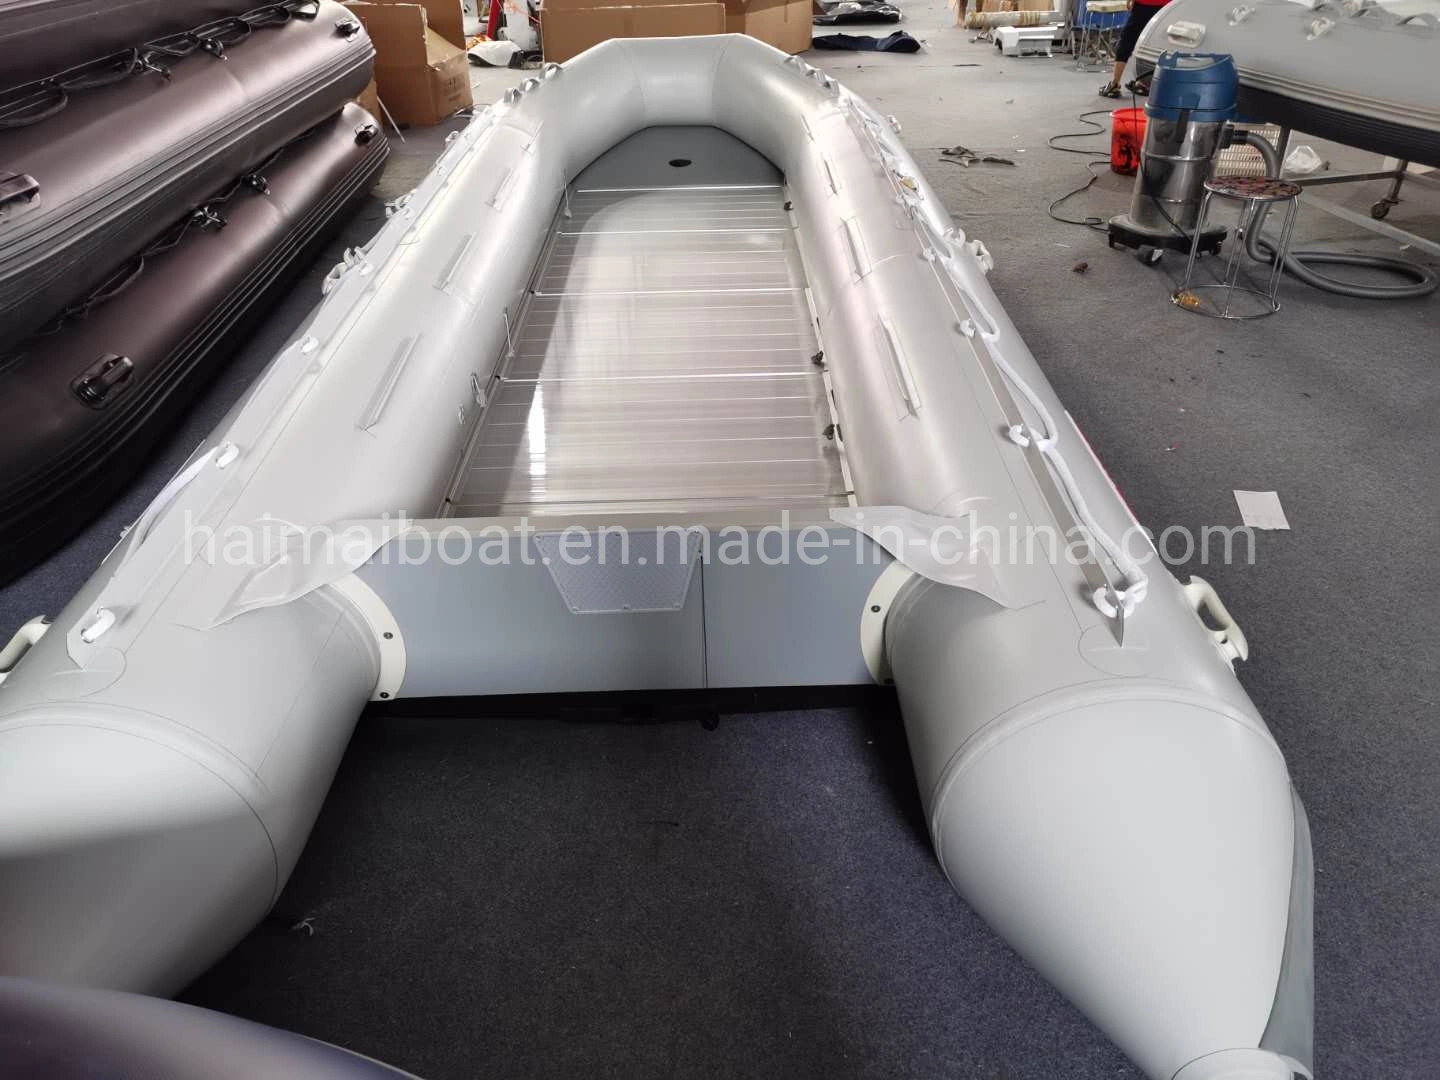 China Fabricante de barco 19,6m 6m Deportes Acuáticos Producto Hypalon Embarcación inflable barco de pesca de la línea de botes de rescate marino barco licitación Panga barco lancha patrullera con CE